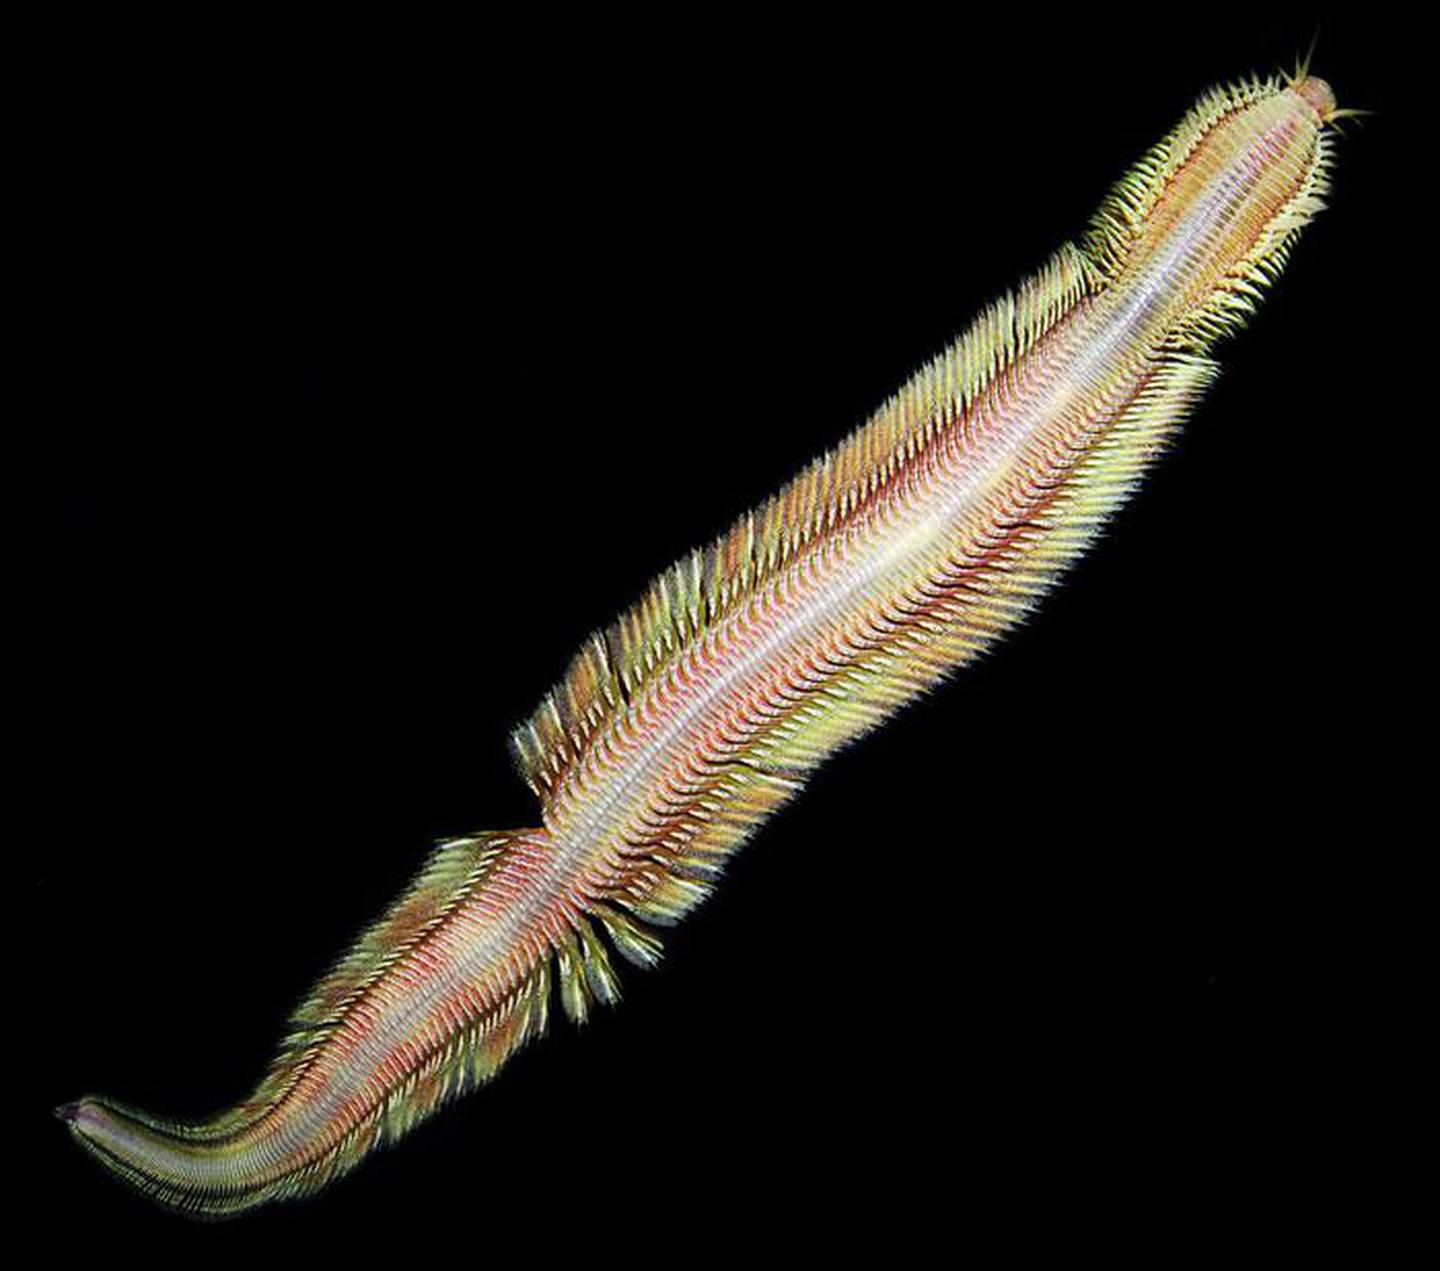 El nuevo gusano marino fue descubierto en las profundidades del mar guanacasteco.

Fotografía: Ekin Tilic